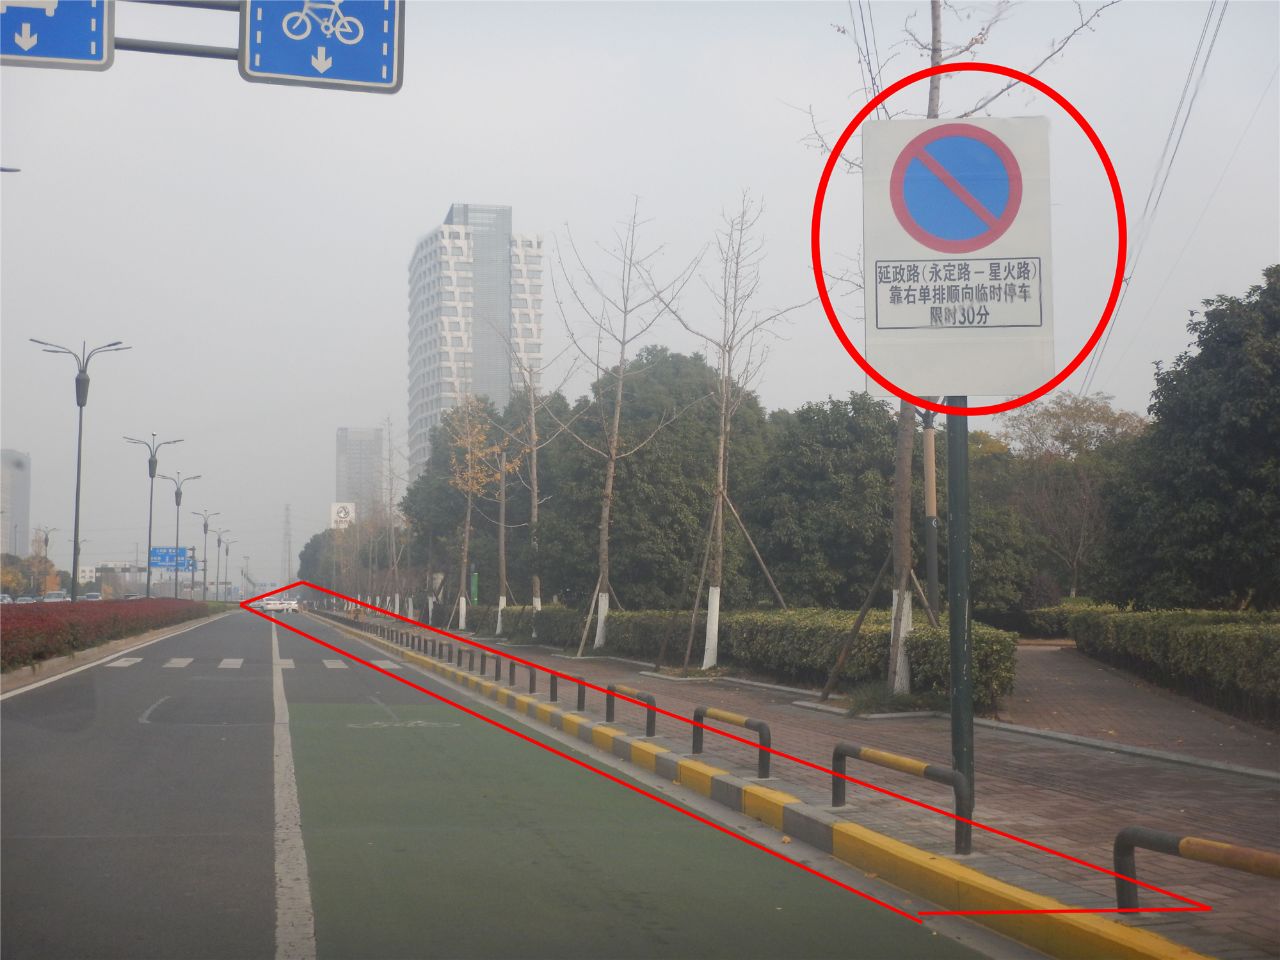 在禁止机动车停放路段,设置有禁止停车标志或标线(黄色实线)▲在交叉